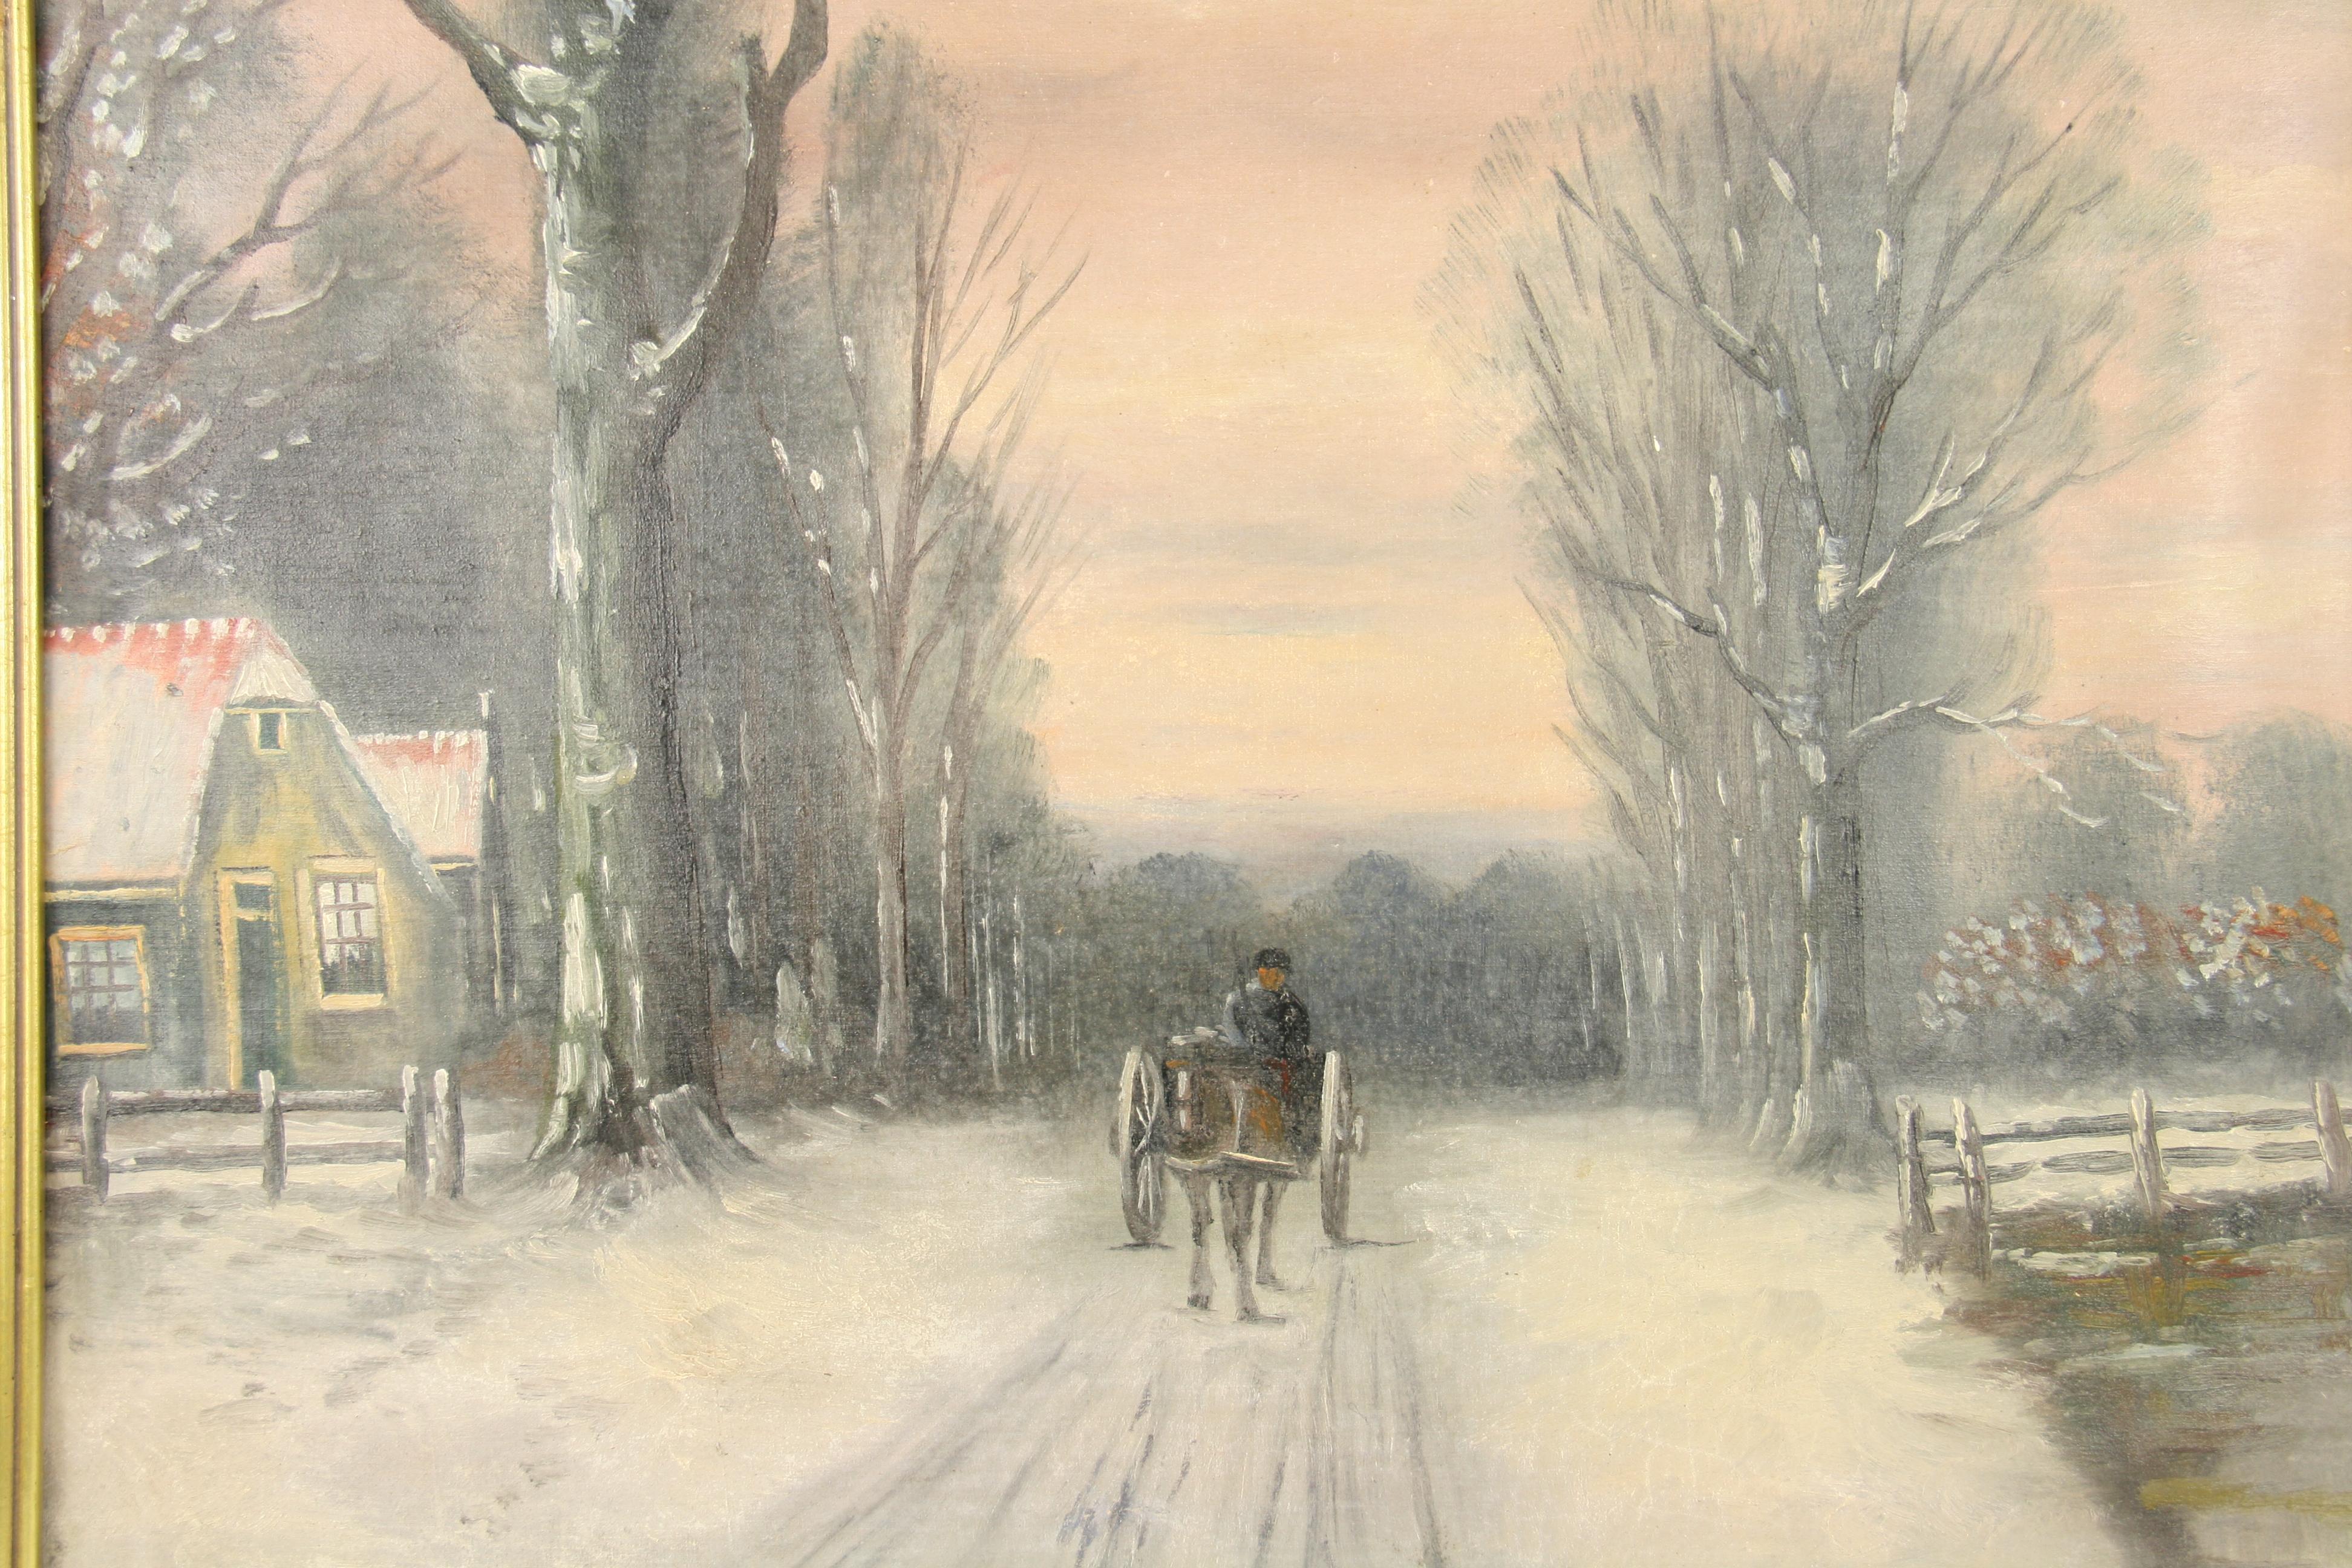 2568 Peinture impressionniste ancienne représentant une voiture à cheval sur une route enneigée
Encadré dans un cadre d'époque
Toile appliquée sur carton 
Taille de l'image 17.5x23.5